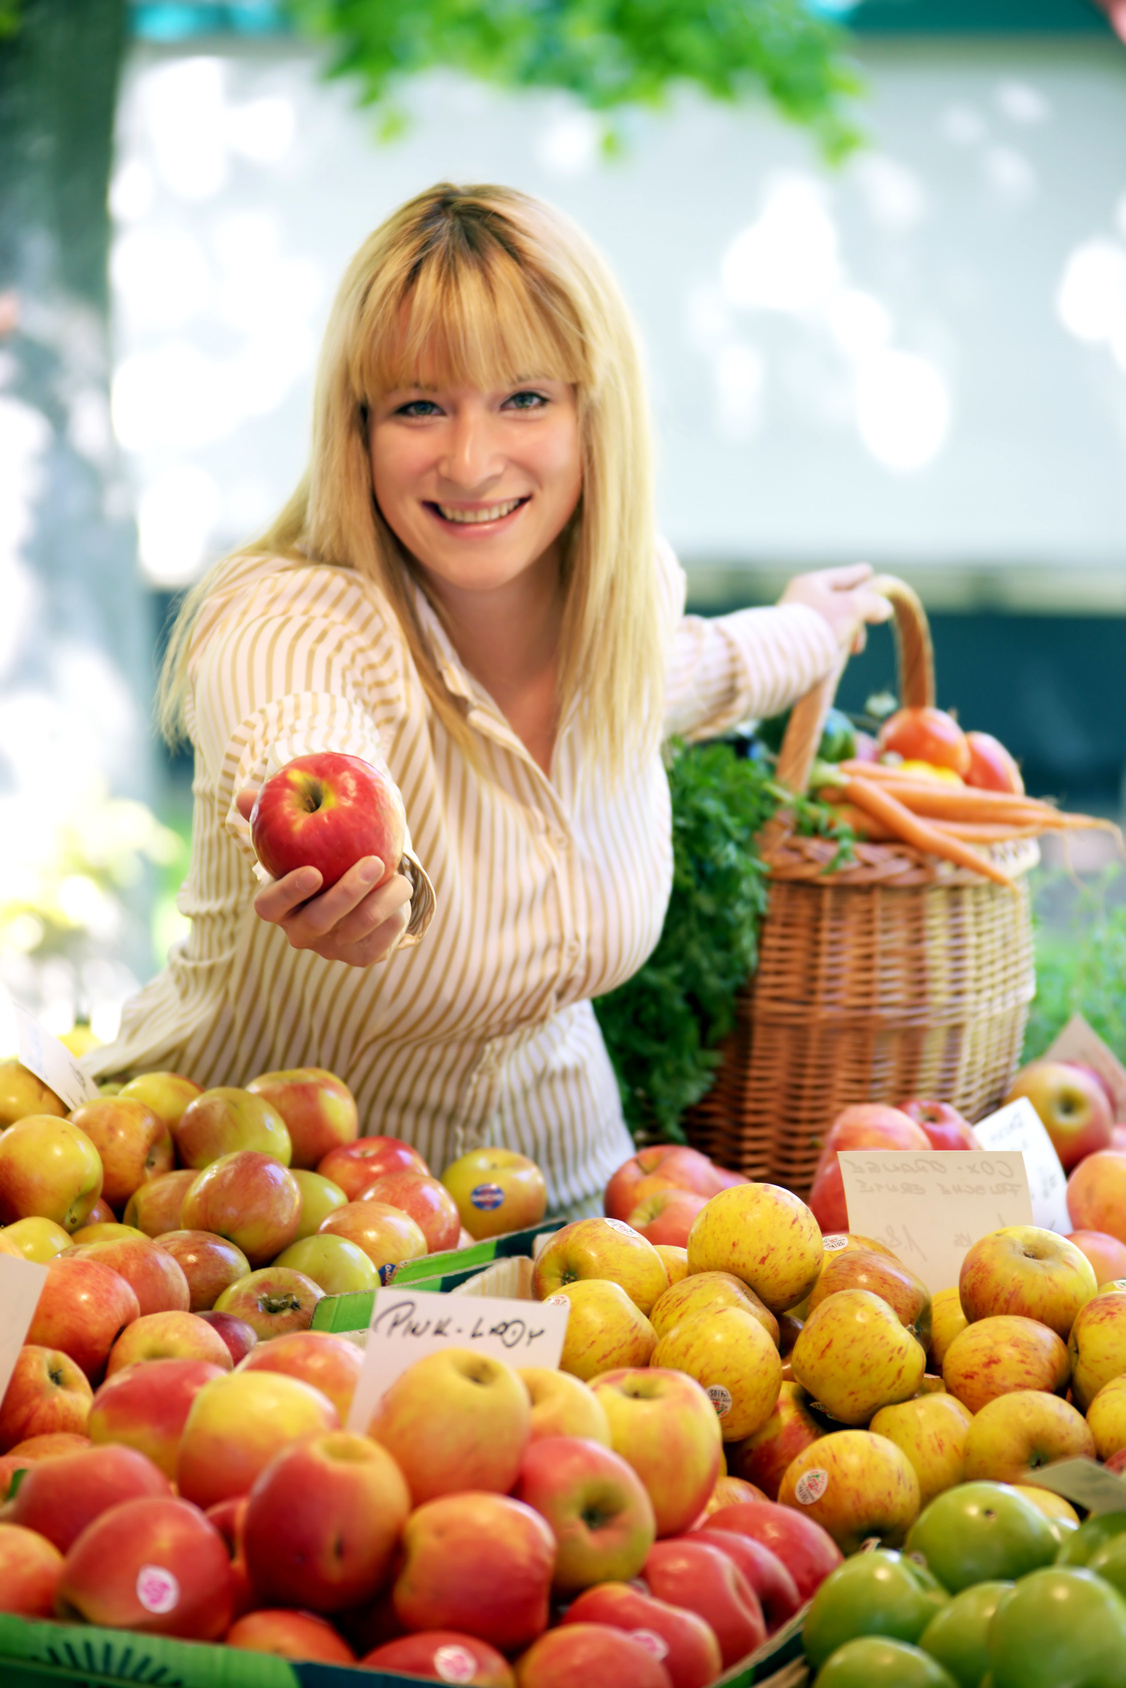 Eine freundliche Frau steht hinter einem Marktstand mit verschiedenen Apfelsorten und hält dem Betrachter einen Apfel hin. Hinter ihr steht ein geflochtener Korb, aus dem Karotten und Äpfel herausgucken.